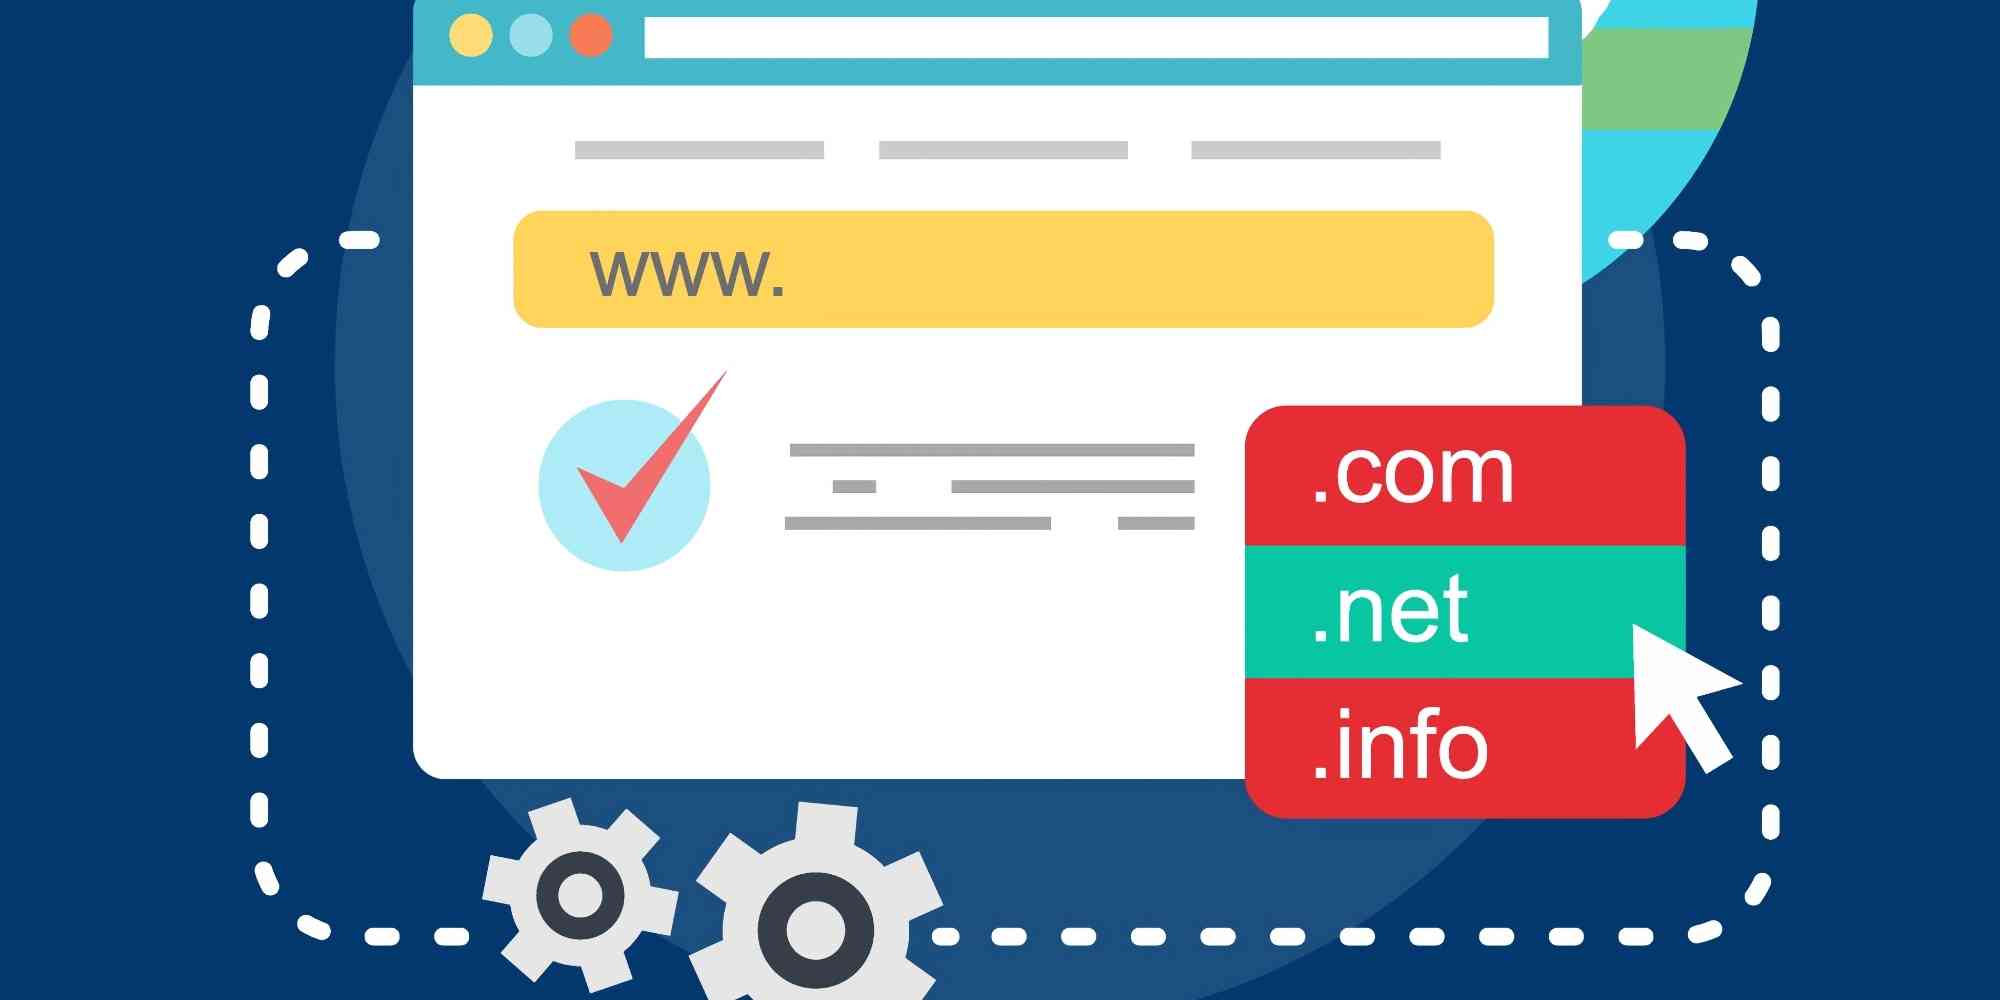 是一个图形插图，似乎描绘了一个网络浏览器界面，在地址栏中输入了一个域名，并伴有一个批准的复选标记和不同域名扩展名的选项，如 .com、.net 和 .info。这种图像通常用来表示网站域名的选择。在搜索引擎优化（SEO）的背景下，域名及其扩展名的选择会对网站的品牌塑造、可记忆性、潜在可信度和国际影响力产生影响。域名标准化可以指确保在各种营销材料和在线展示中一致使用域名的做法，这可能会影响搜索引擎对网站的索引和排名。